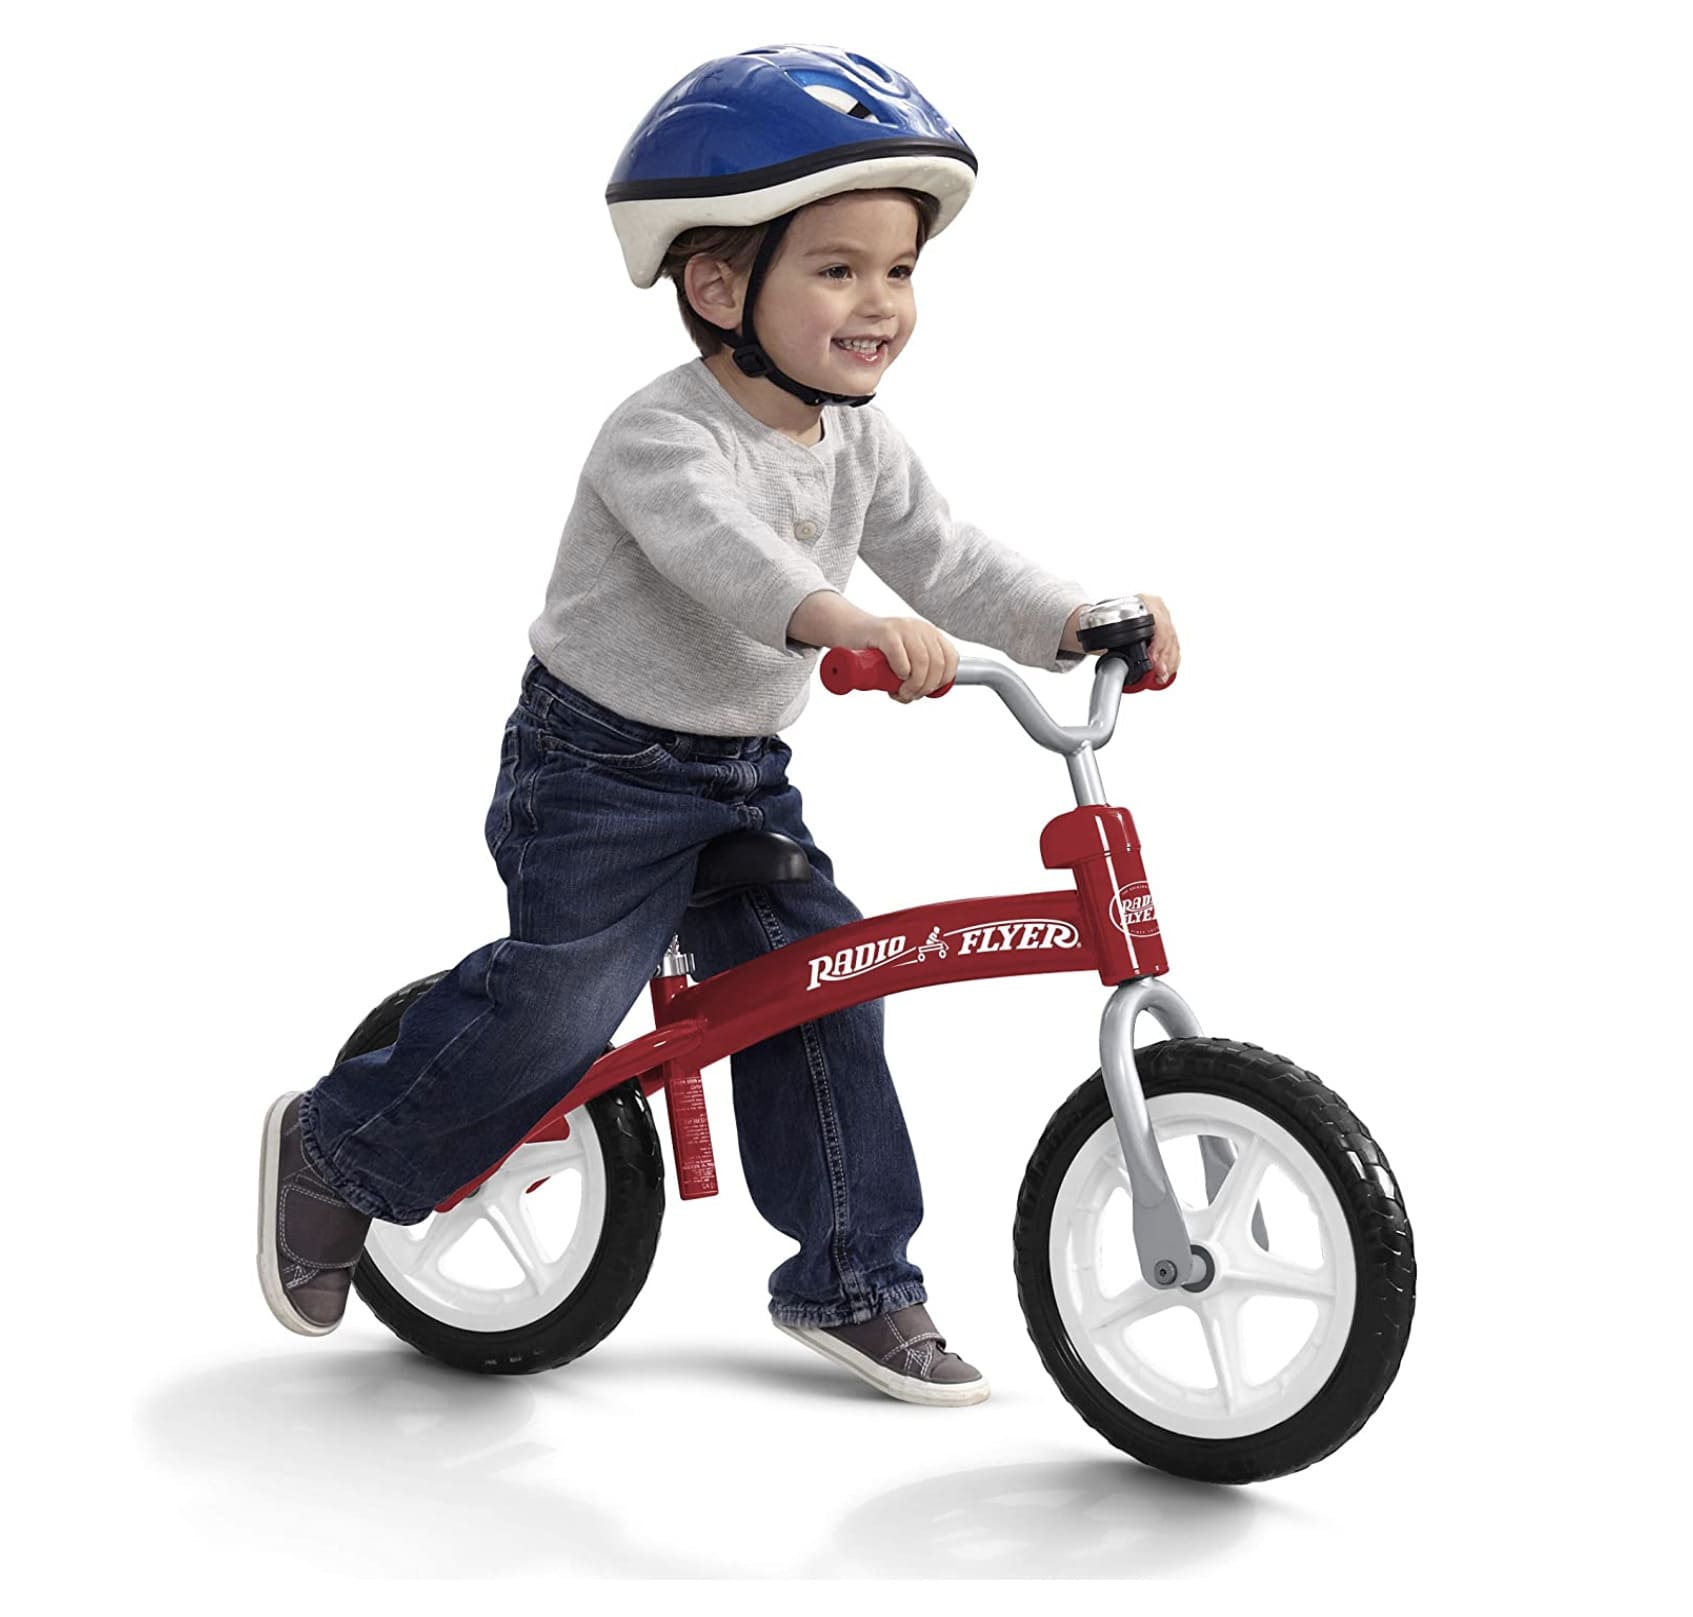 Niño llevando su bicicleta de equilibrio Radio Flyer